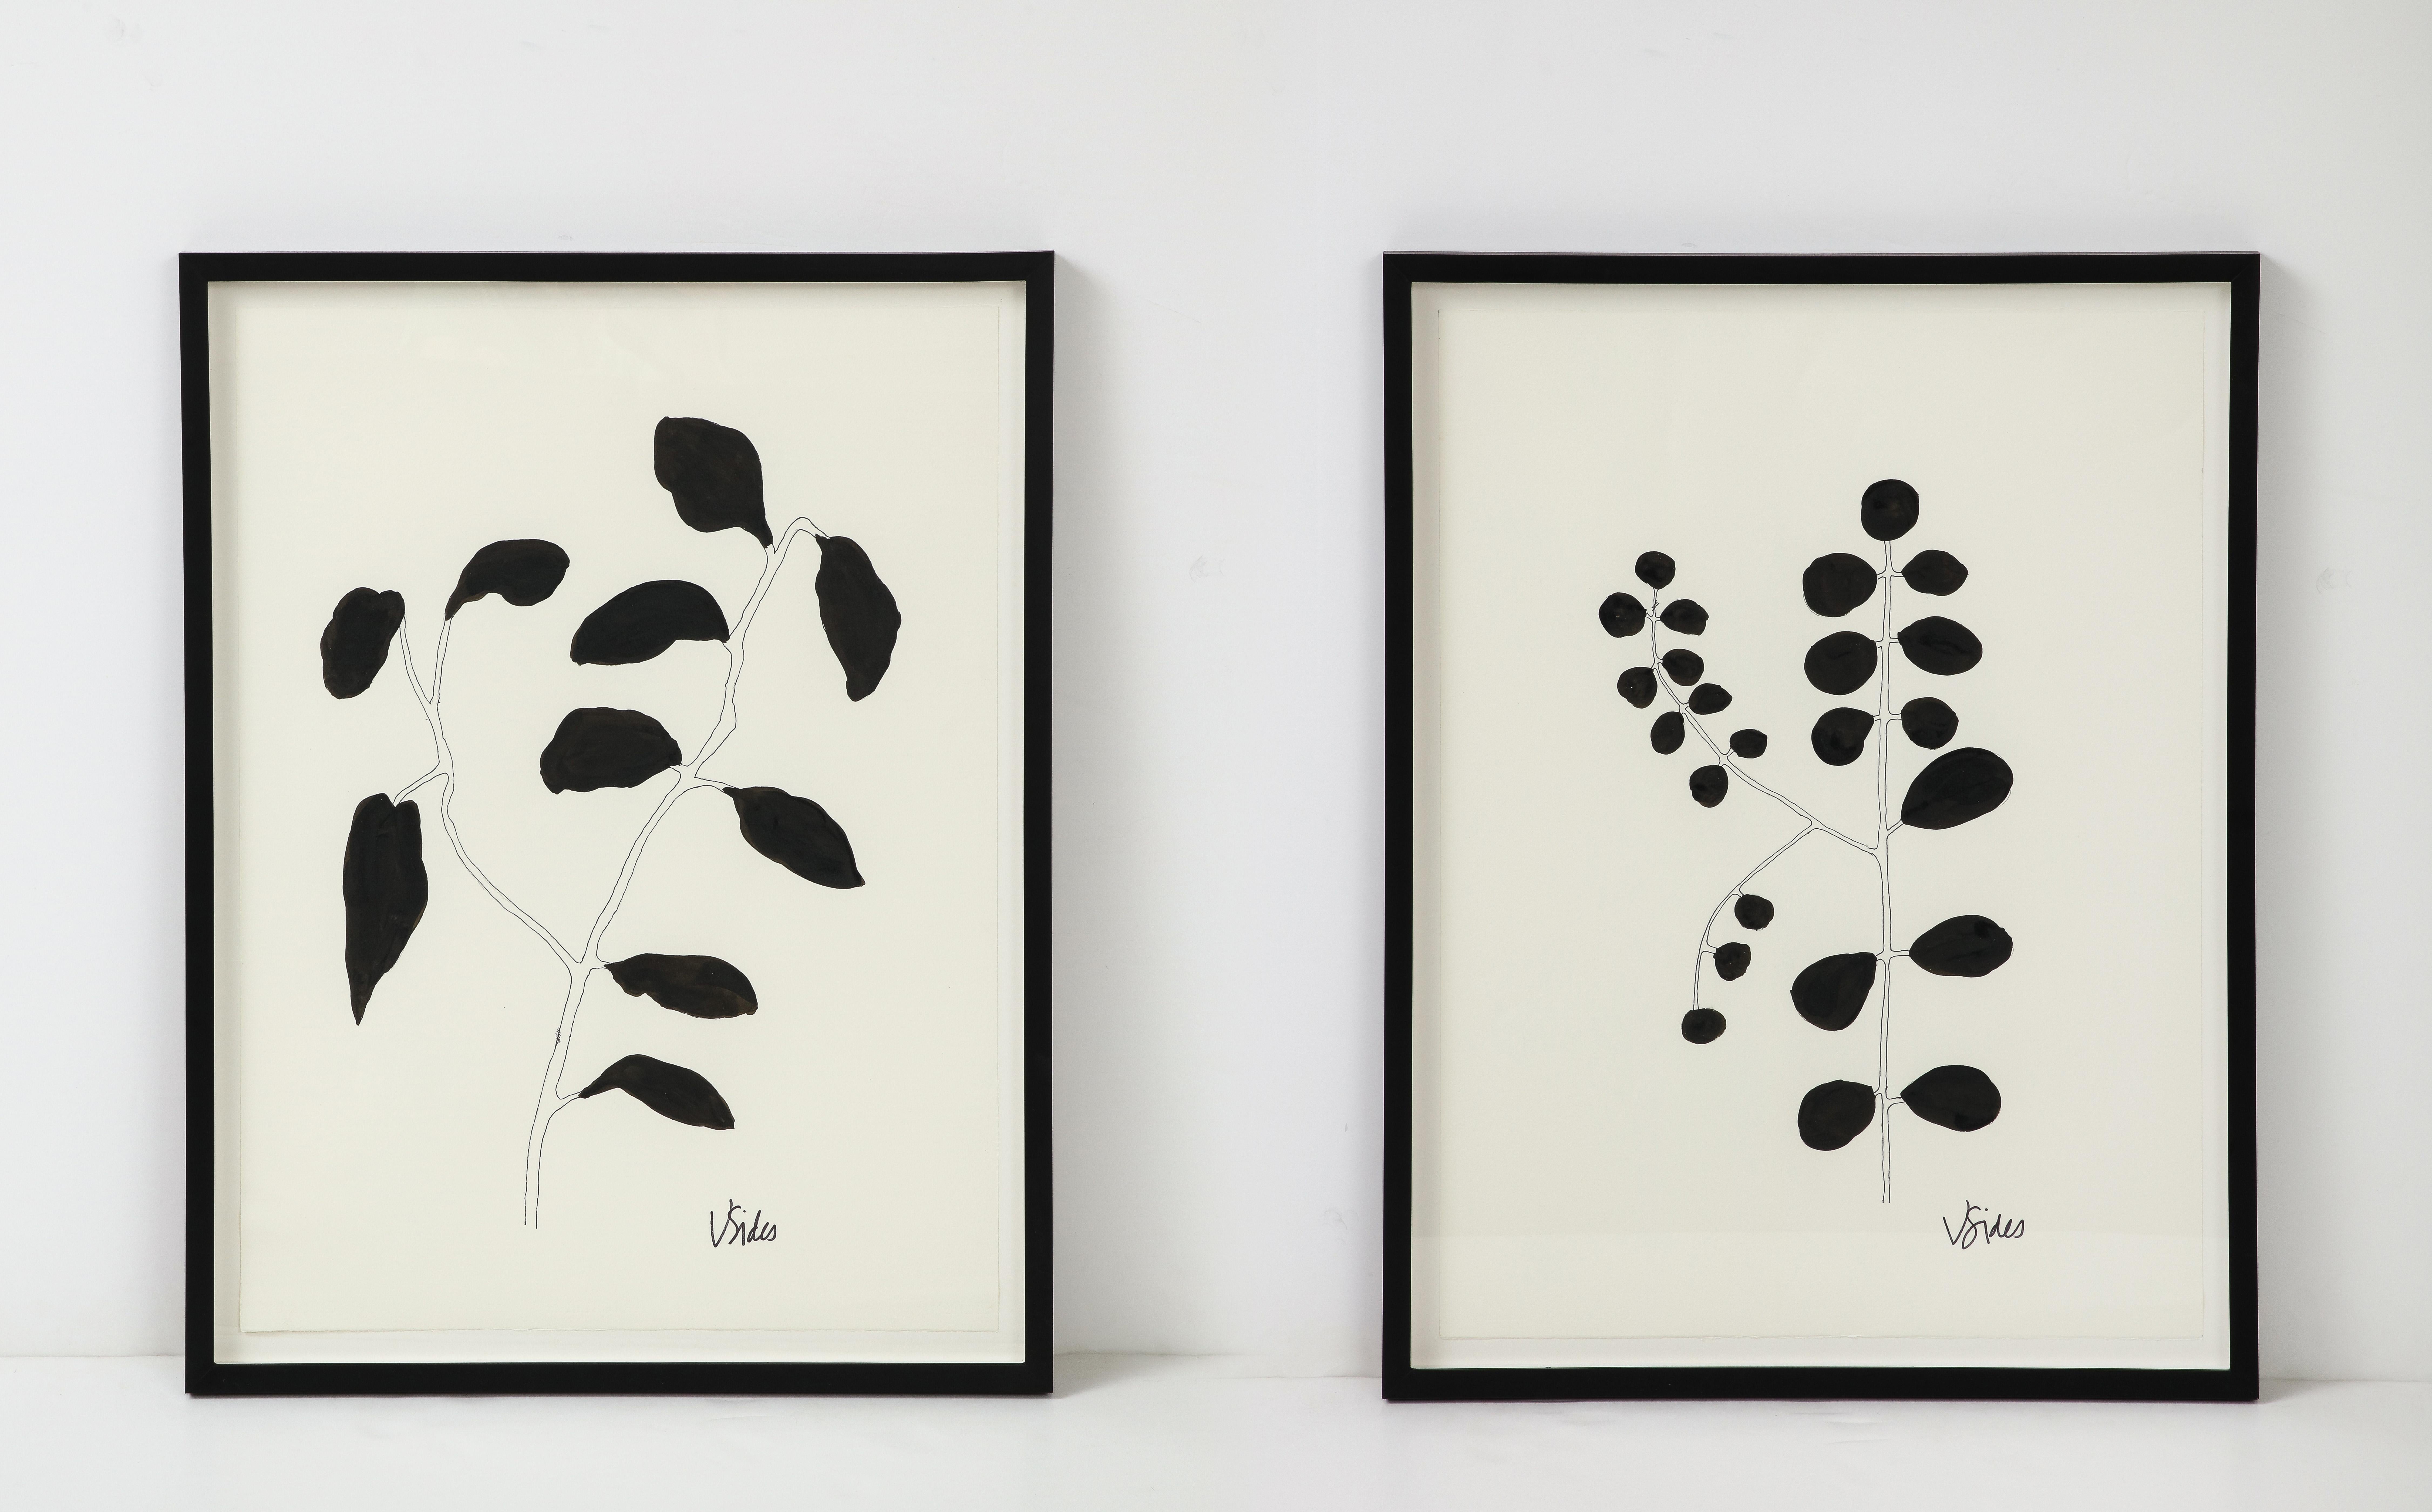 Wir lieben die grafische Schlichtheit dieser Kunstwerke. Die von der georgischen Künstlerin Victoria Sides geschaffenen und signierten Werke sind stilisierte Interpretationen von Blattblüten. Jede ist anders, aber sie funktionieren gut im Paar. Dank